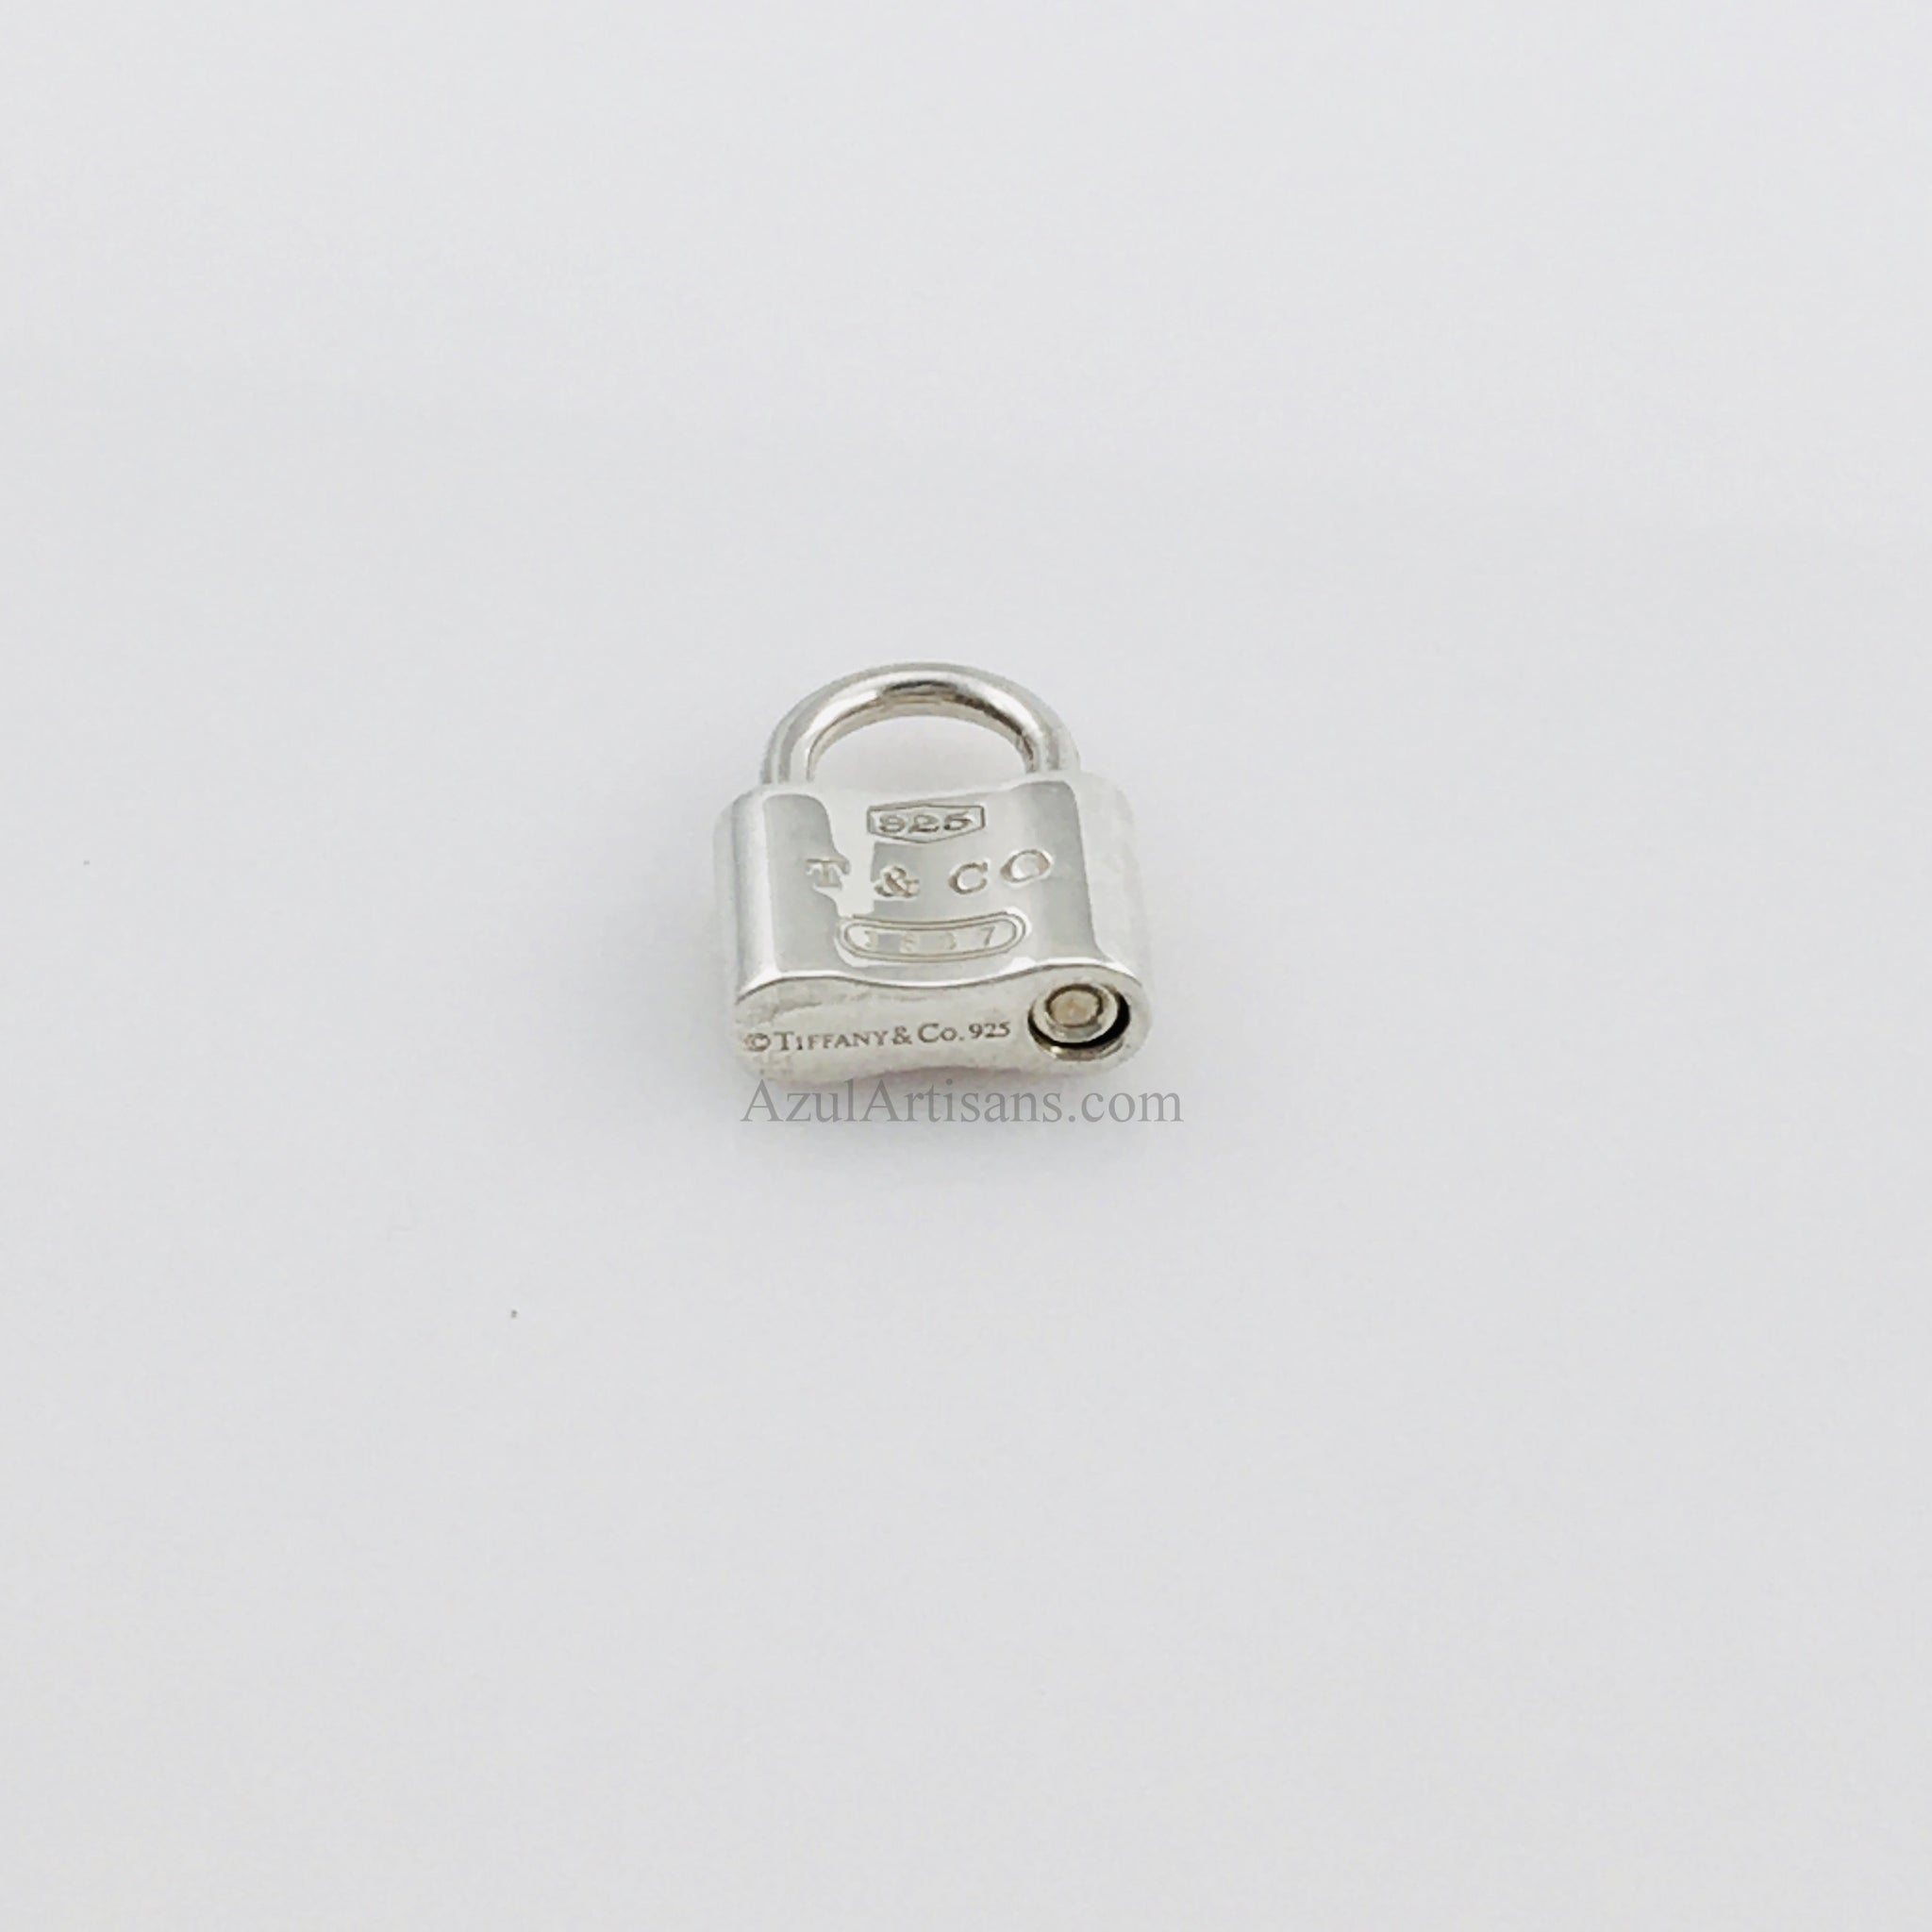 Tiffany & Co. 1837 Lock Charm Necklace